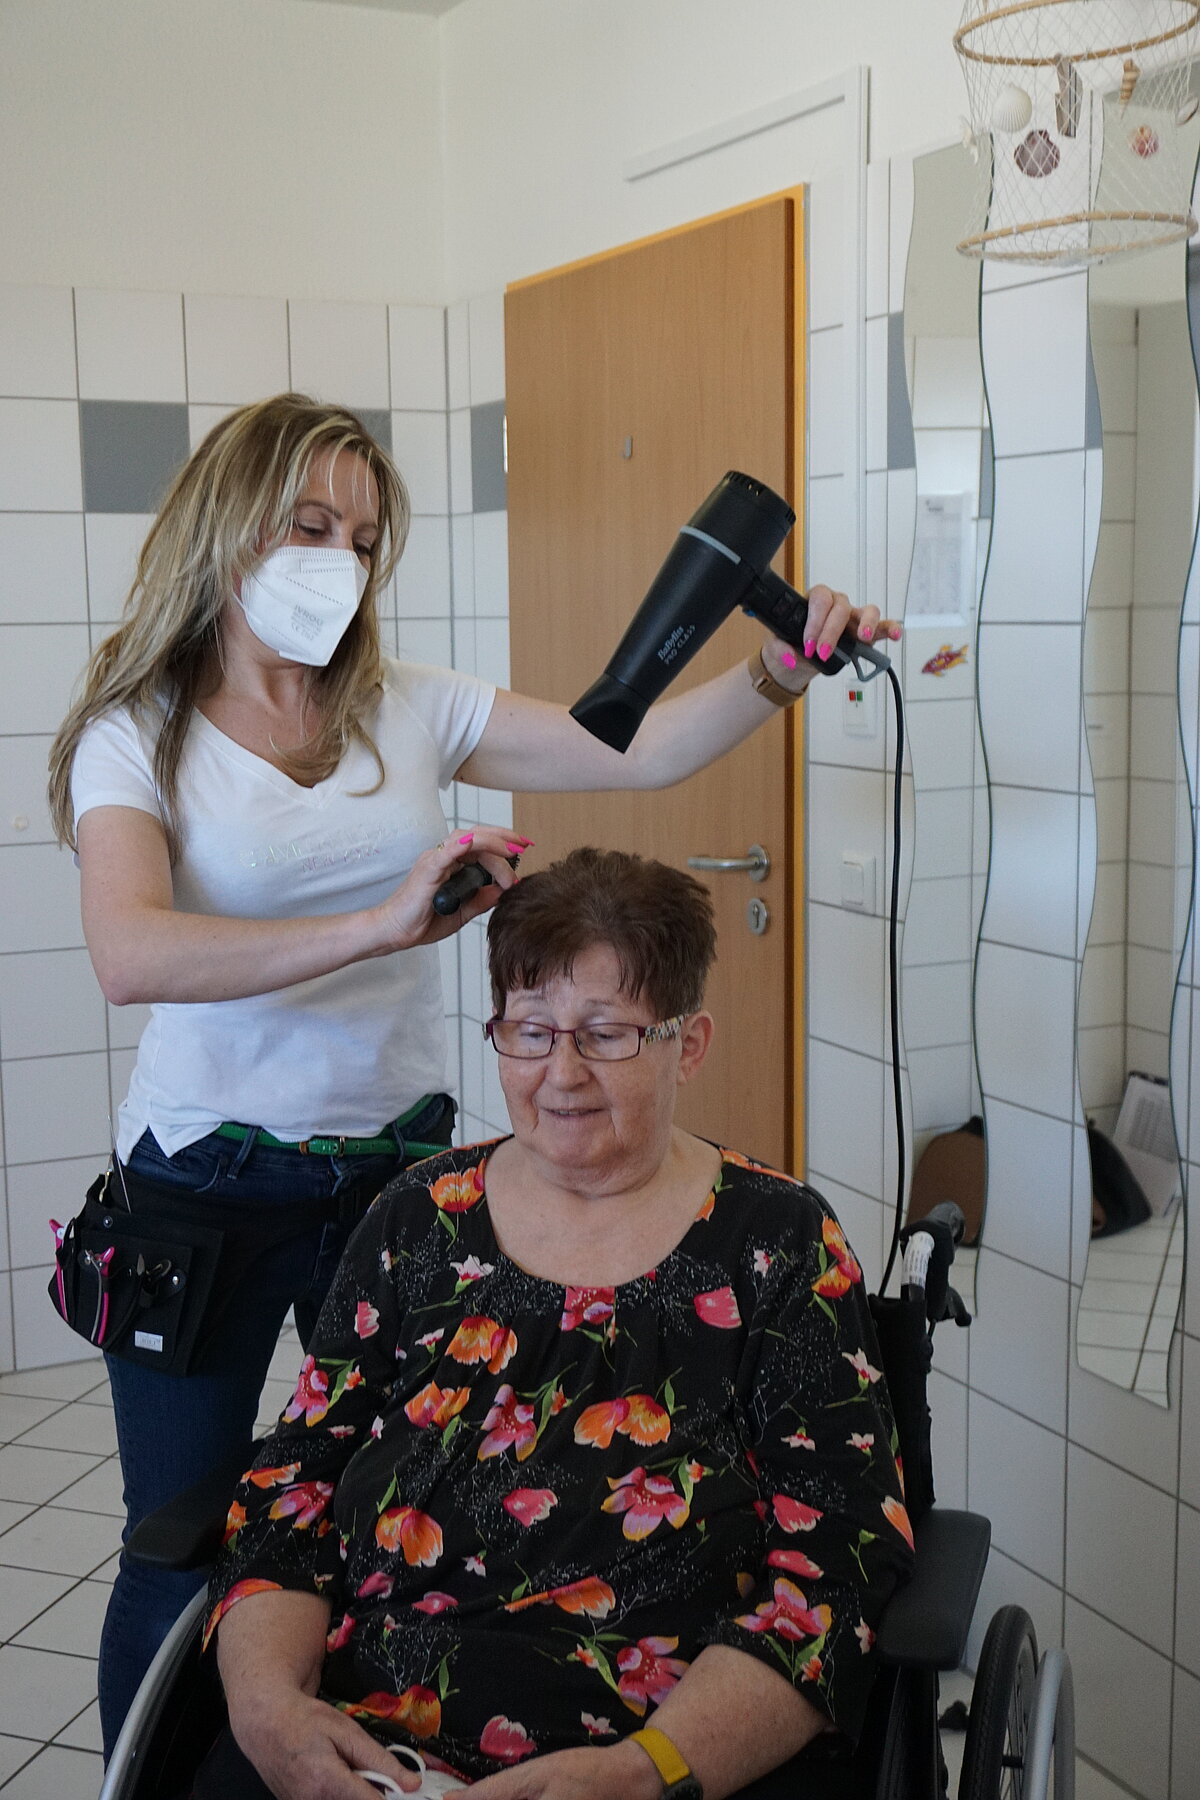 Frisörin föhnt Bewohnerin der Alloheim Senioren-Residenz Fernwald-Annerod die Haare